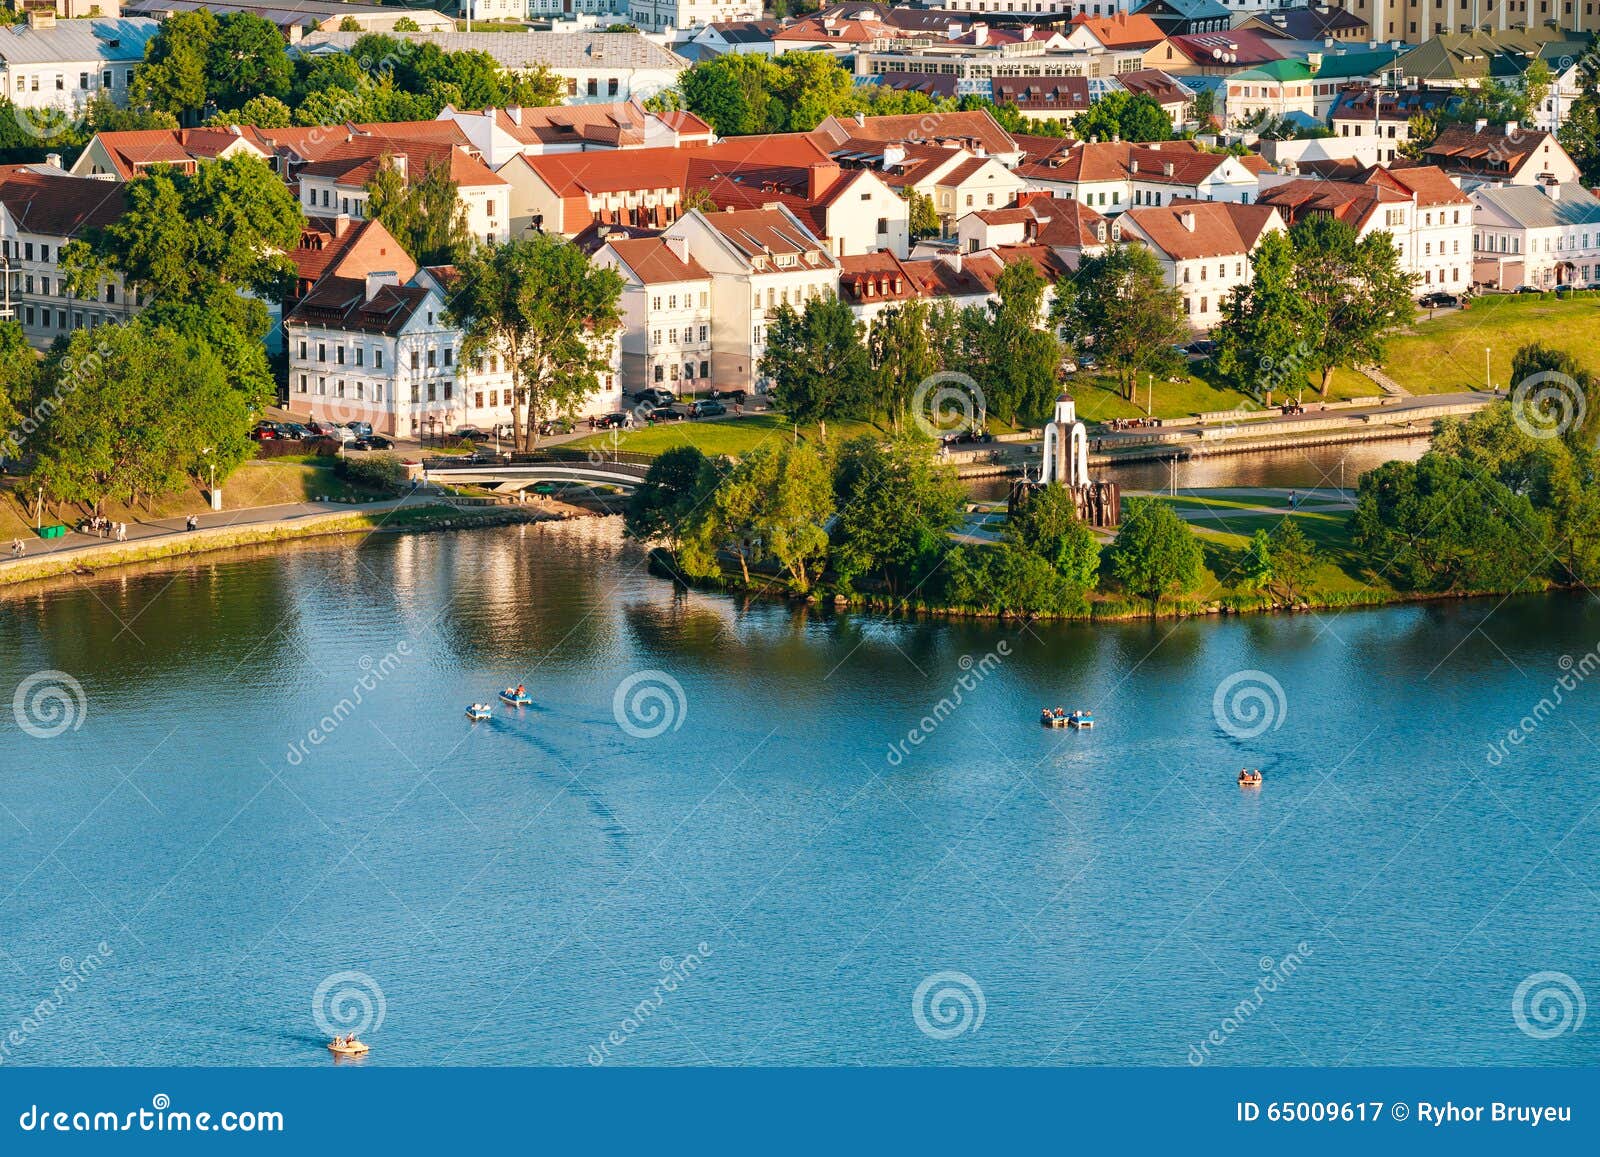 cityscape of minsk, belarus. trojeckaje